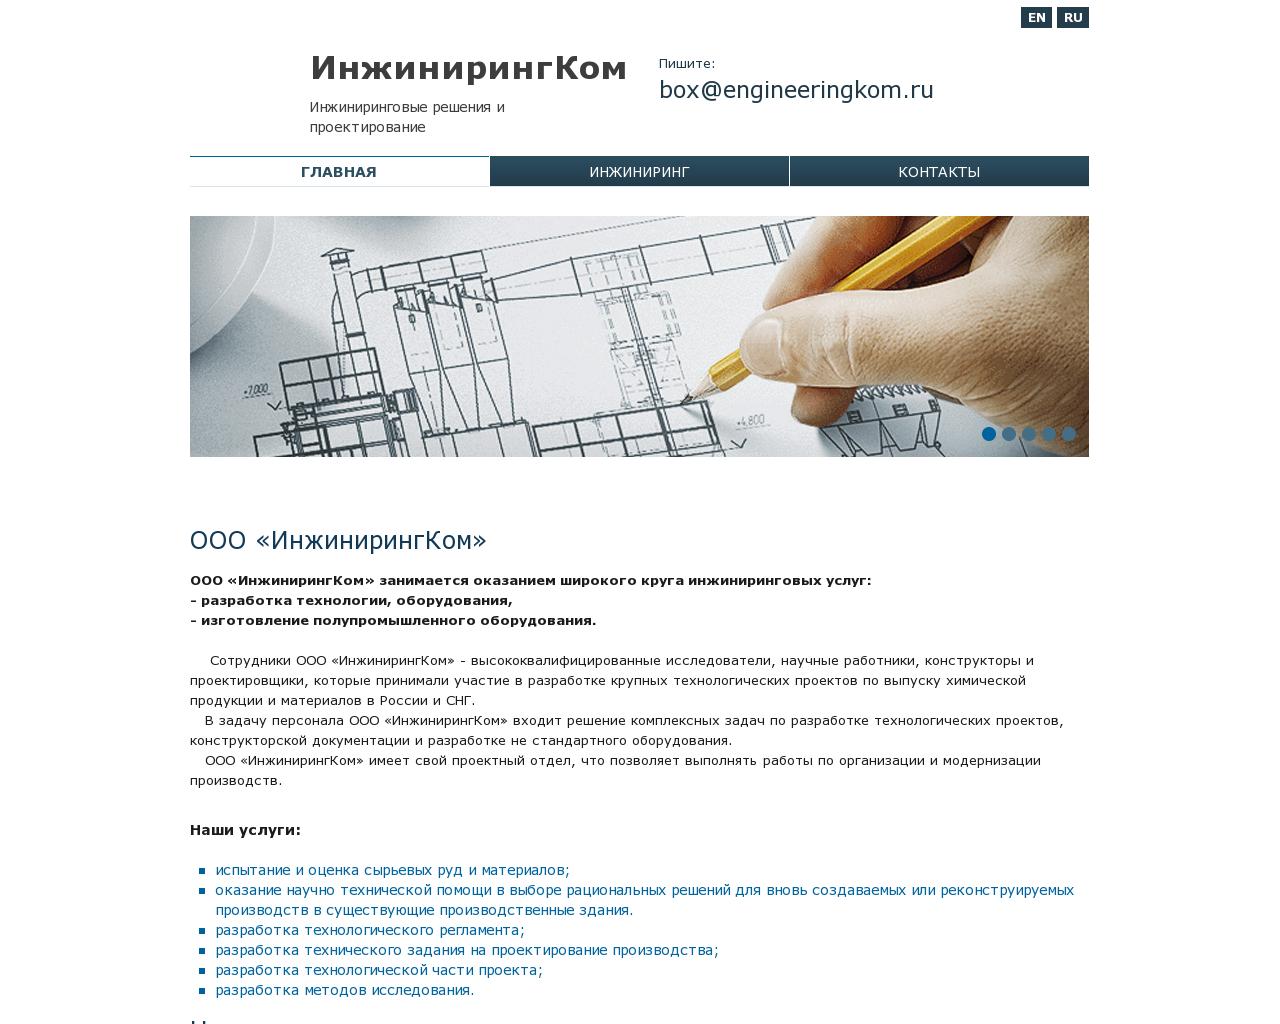 Изображение сайта engineeringkom.ru в разрешении 1280x1024